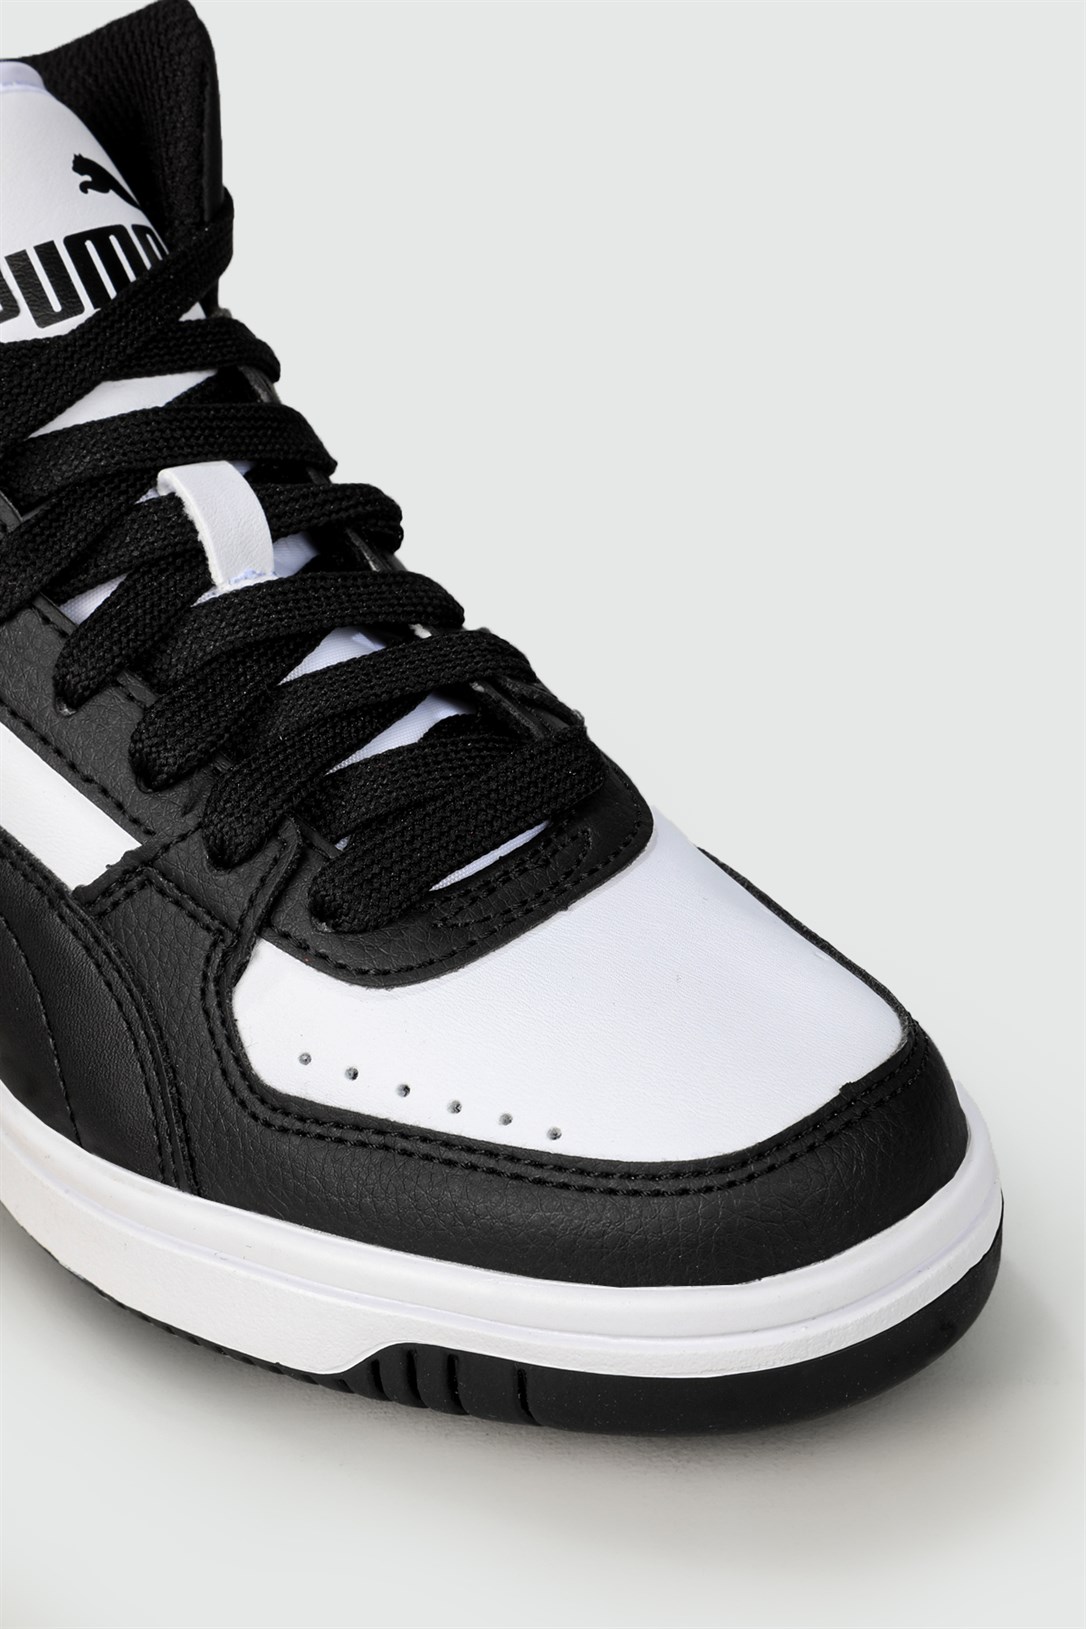 Puma Jordan Boğazlı Siyah Beyaz Unisex Spor Ayakkabı 374687-01 JR